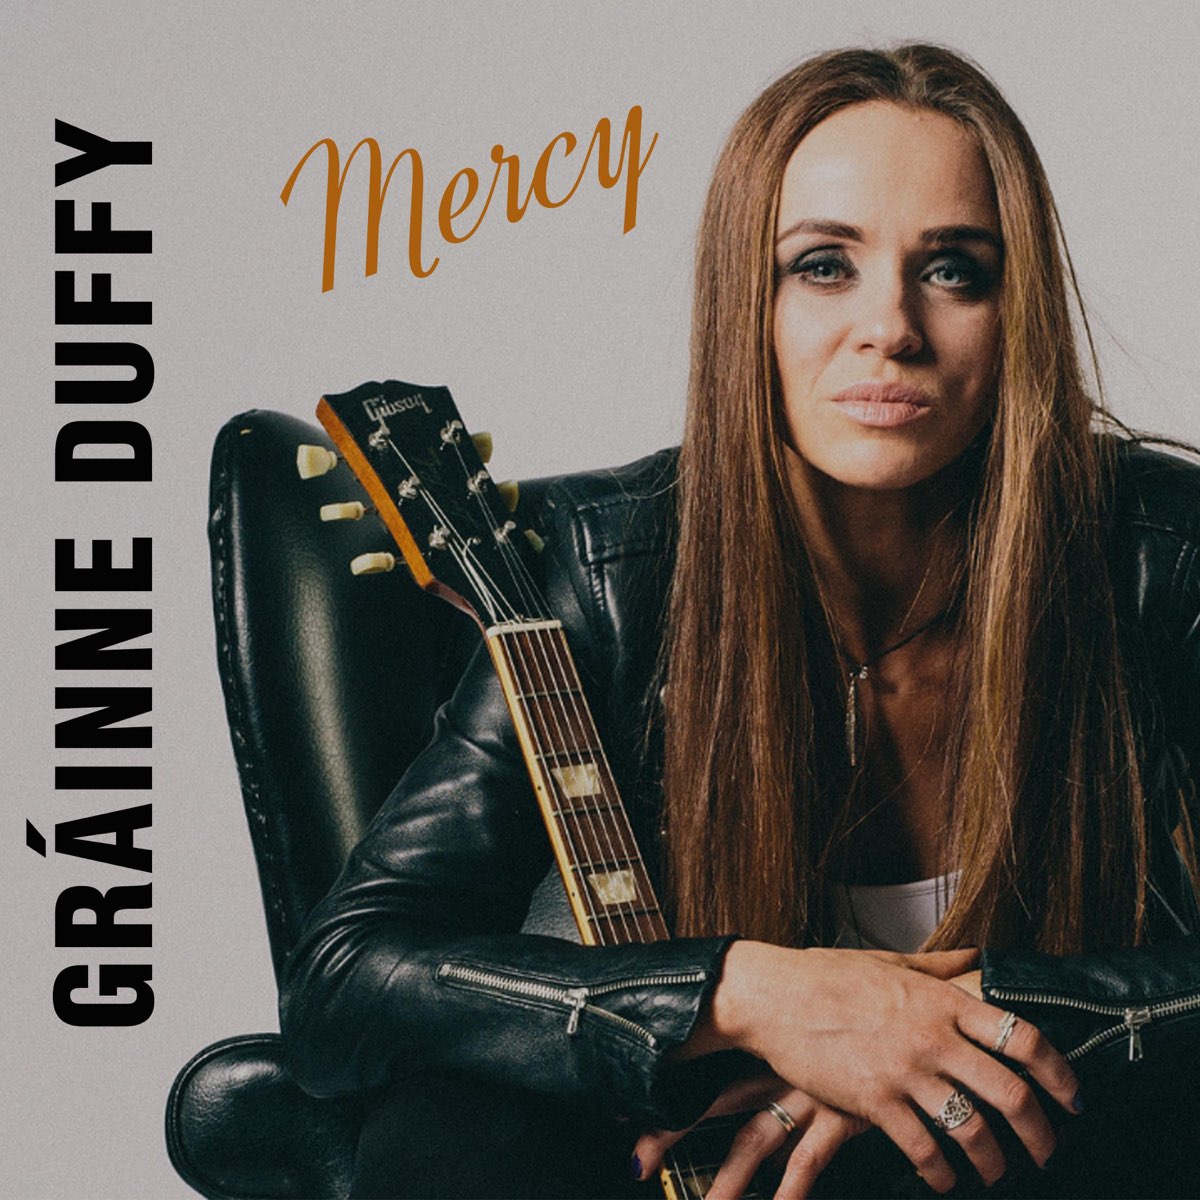 Mercy - Single par Gráinne Duffy sur Apple Music